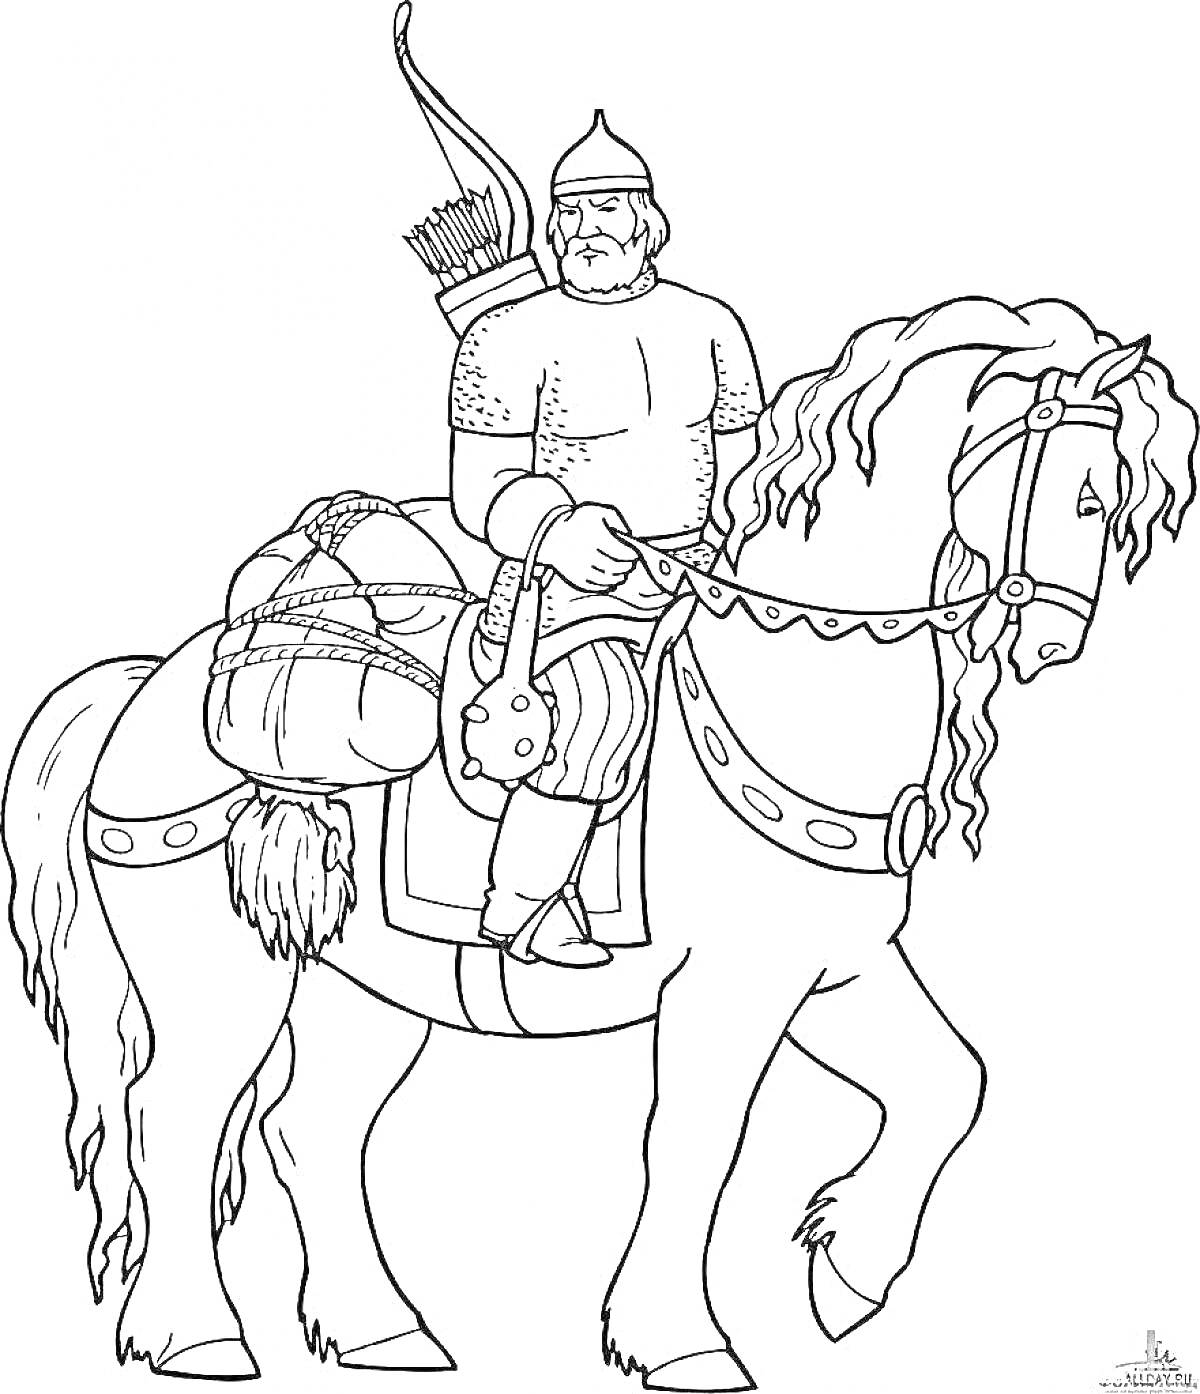 Илья Муромец на коне с луком, колчаном со стрелами и щитом